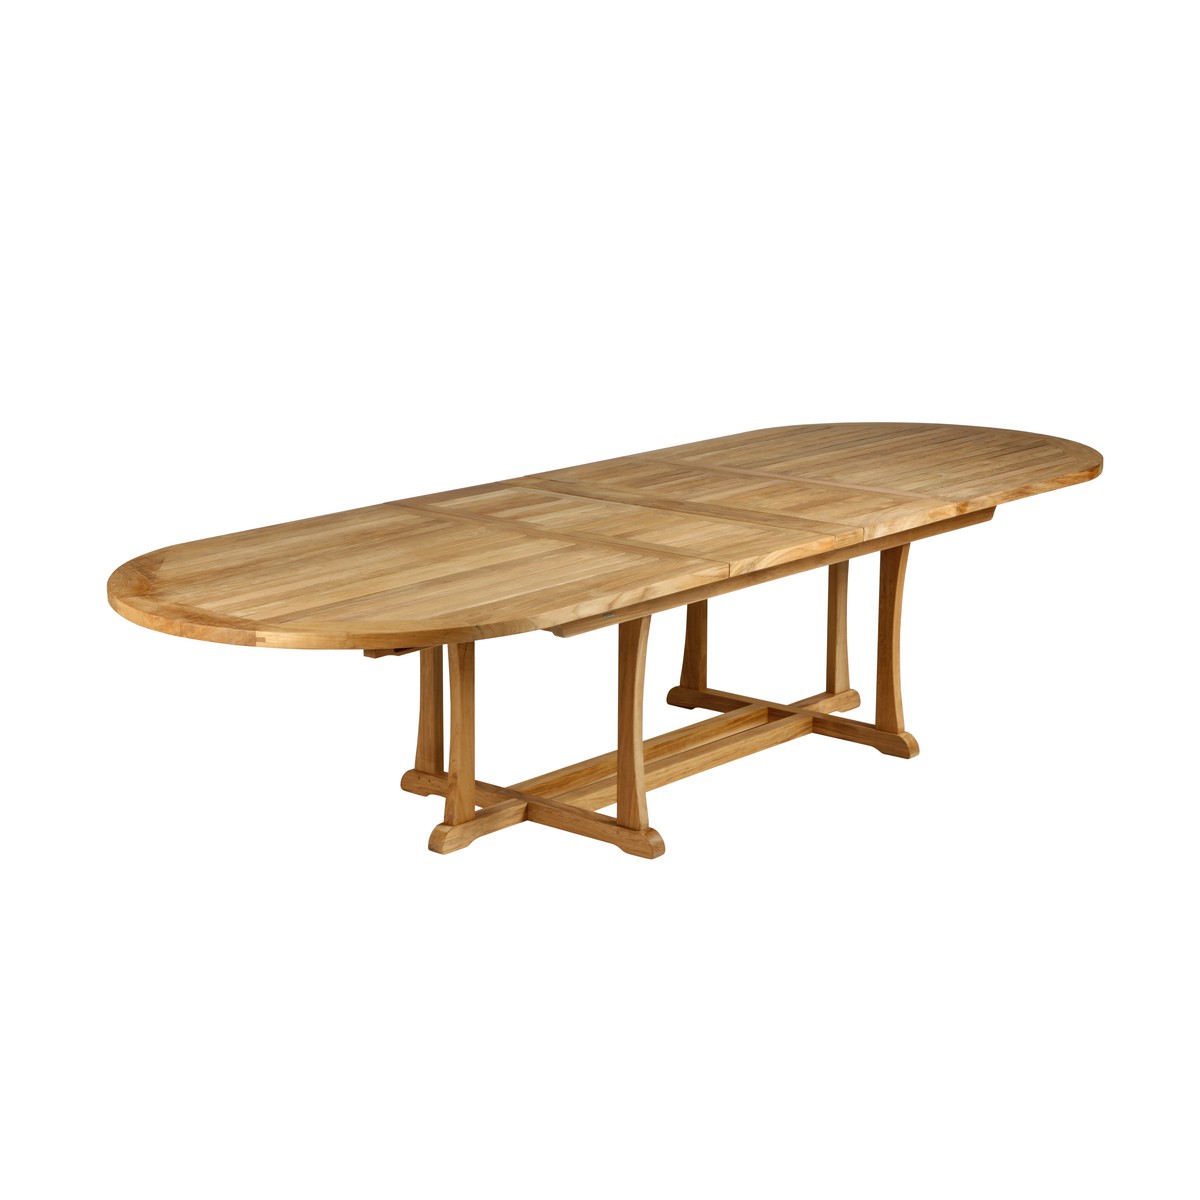 Barlow Tyrie Stirling Table Stirling de salle à manger avec allonges 320 ovale  237cm/319cmx110cmx70.2cm